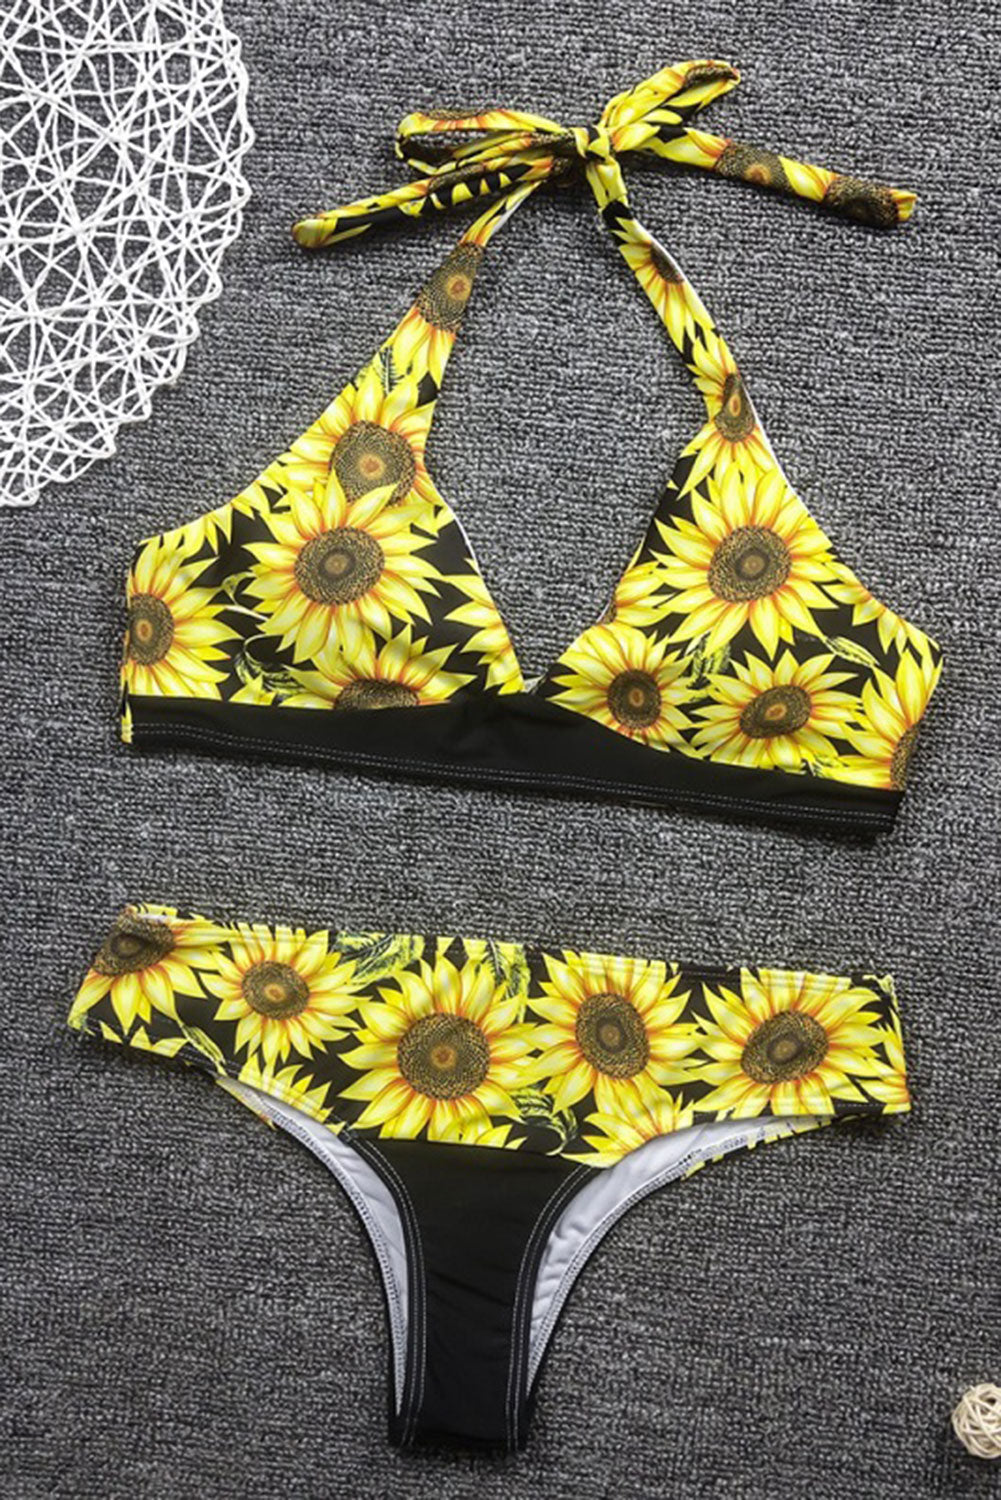 Halter Neck Sunflower Bikini